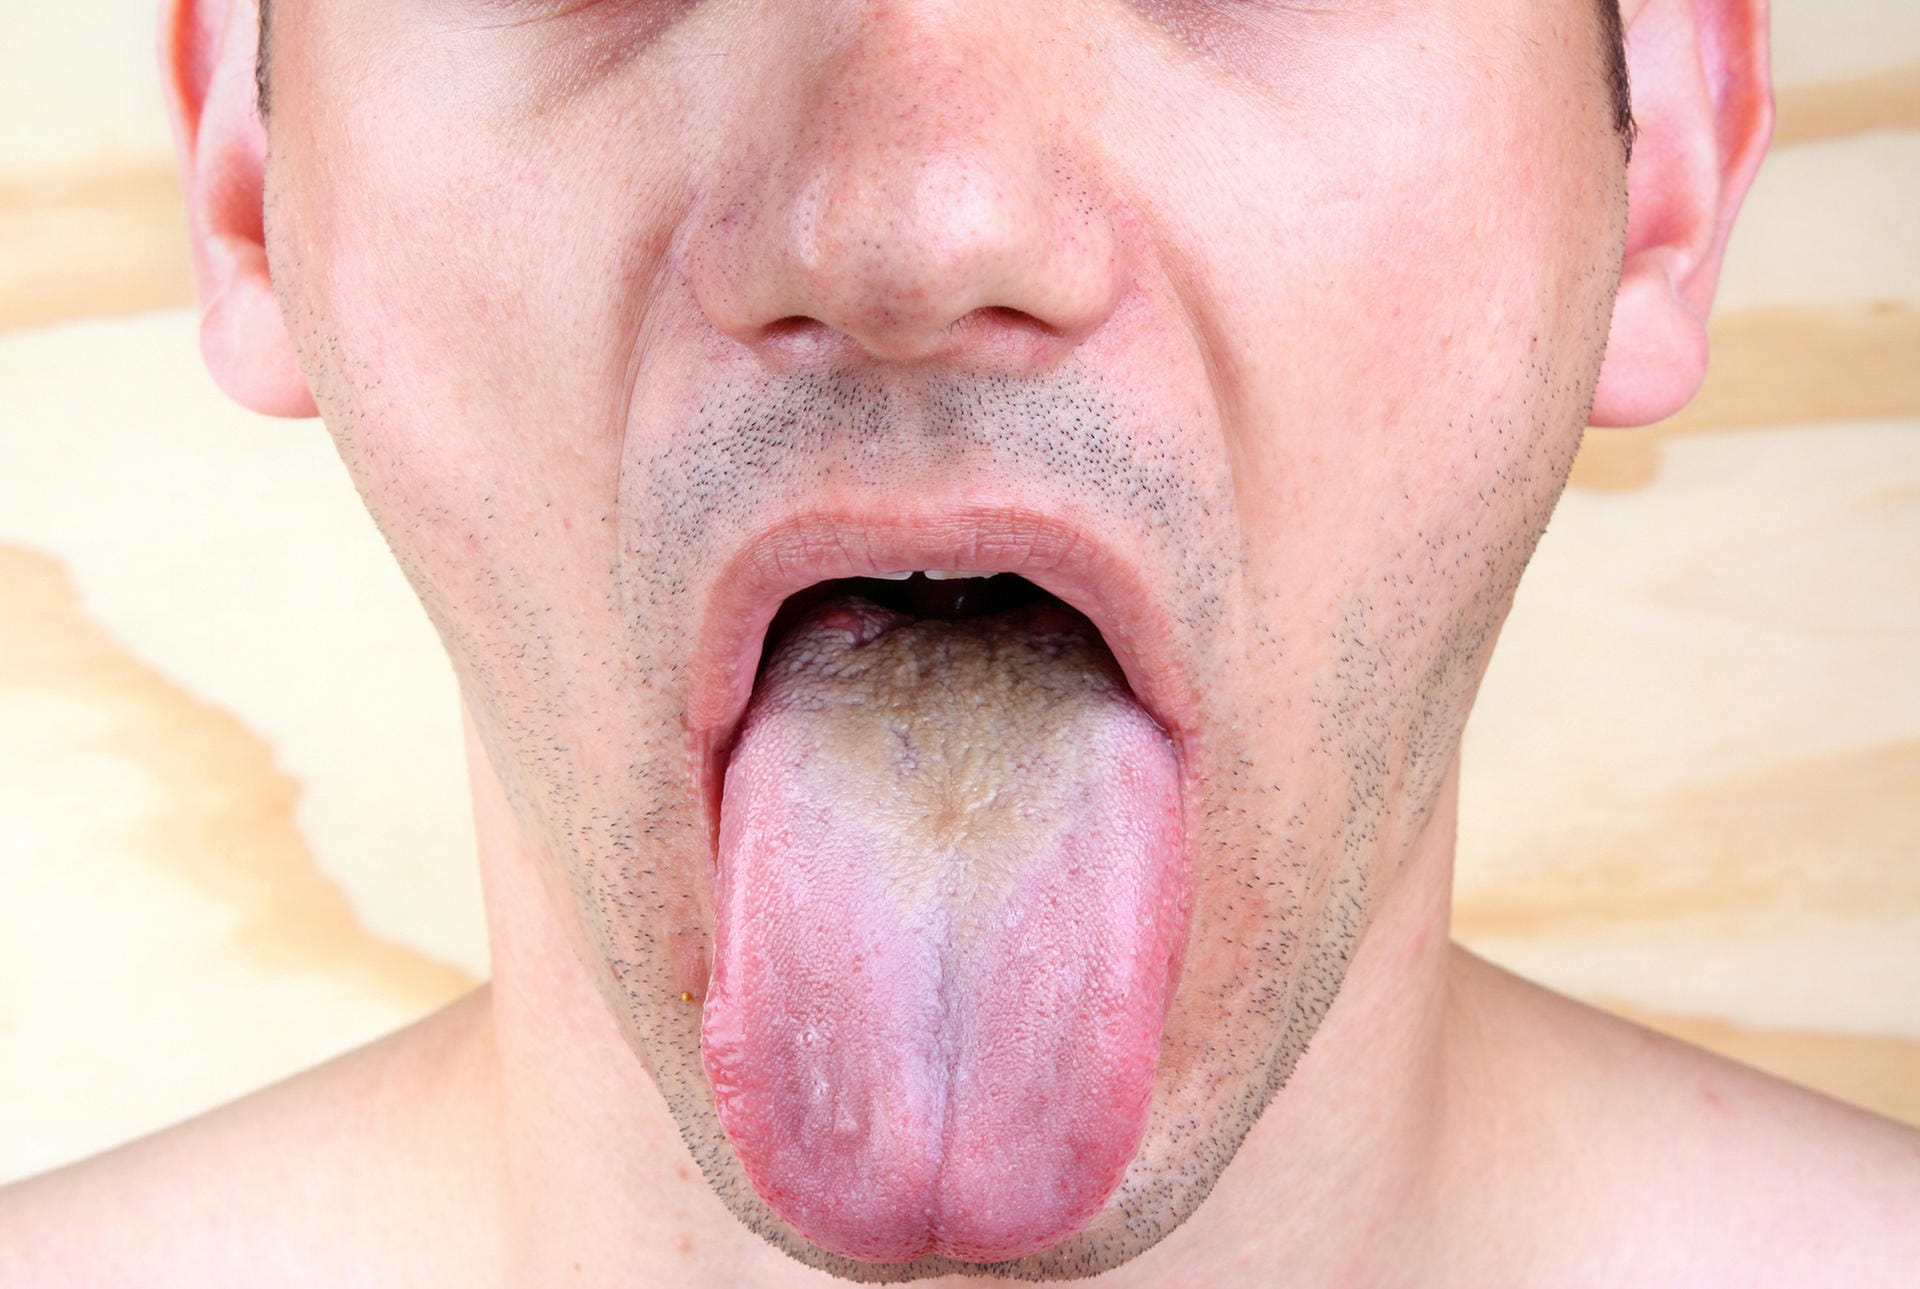 Zungenpilz: Die Erkrankung wird durch eine Infektion mit dem Hefepilz Candida albicans ausgelöst.